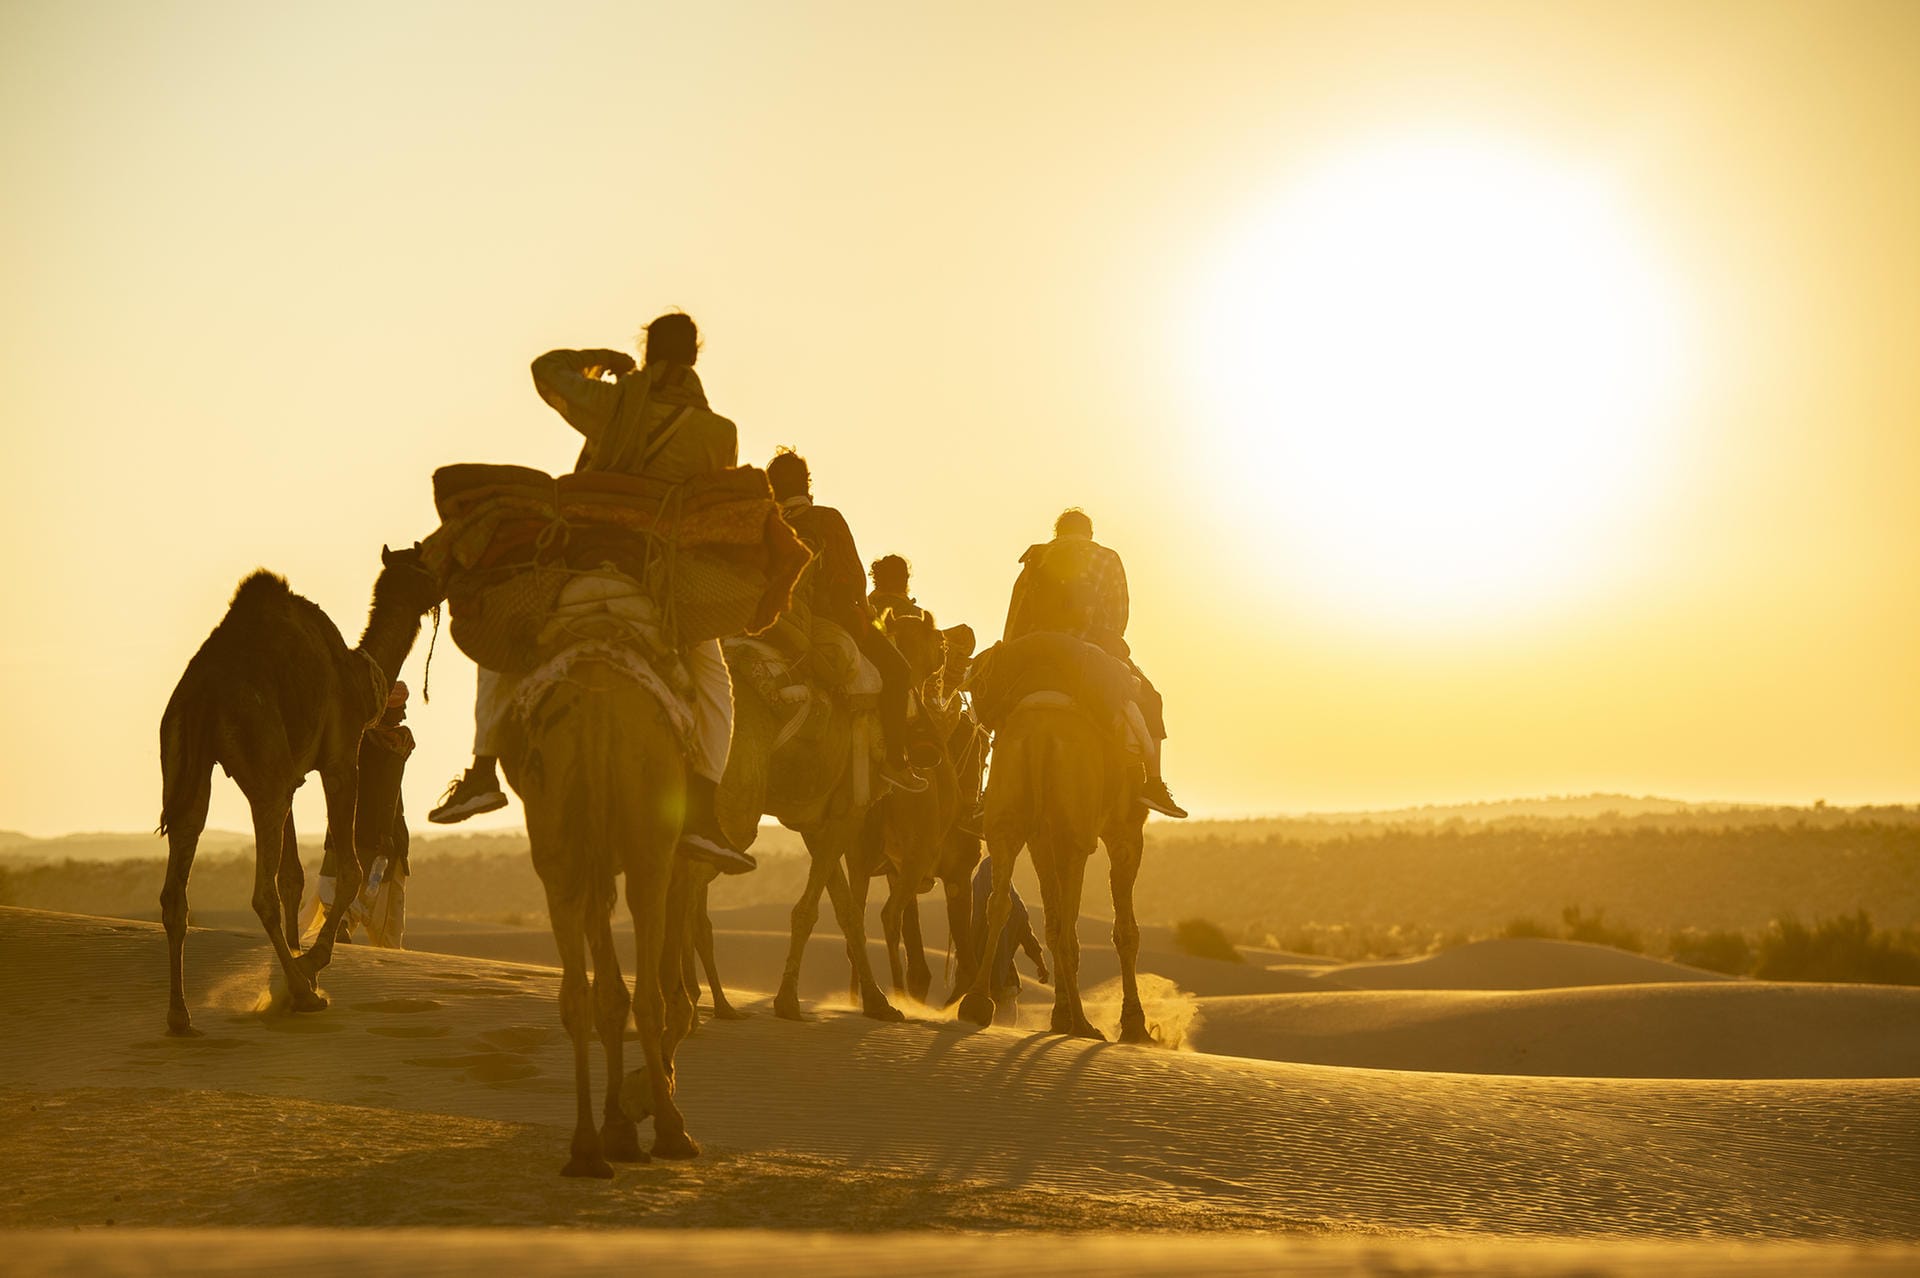 Die Beduinenkultur in Saudi-Arabien: Knapp 840.000 Beduinen leben in Saudi-Arabien. Sie leben entweder als nomadische Hirten oder als eher sesshafte Landwirte. Haupttransportmittel für die Nomaden sind die Kamele; Schafe und Ziegen dienen dem Handel.